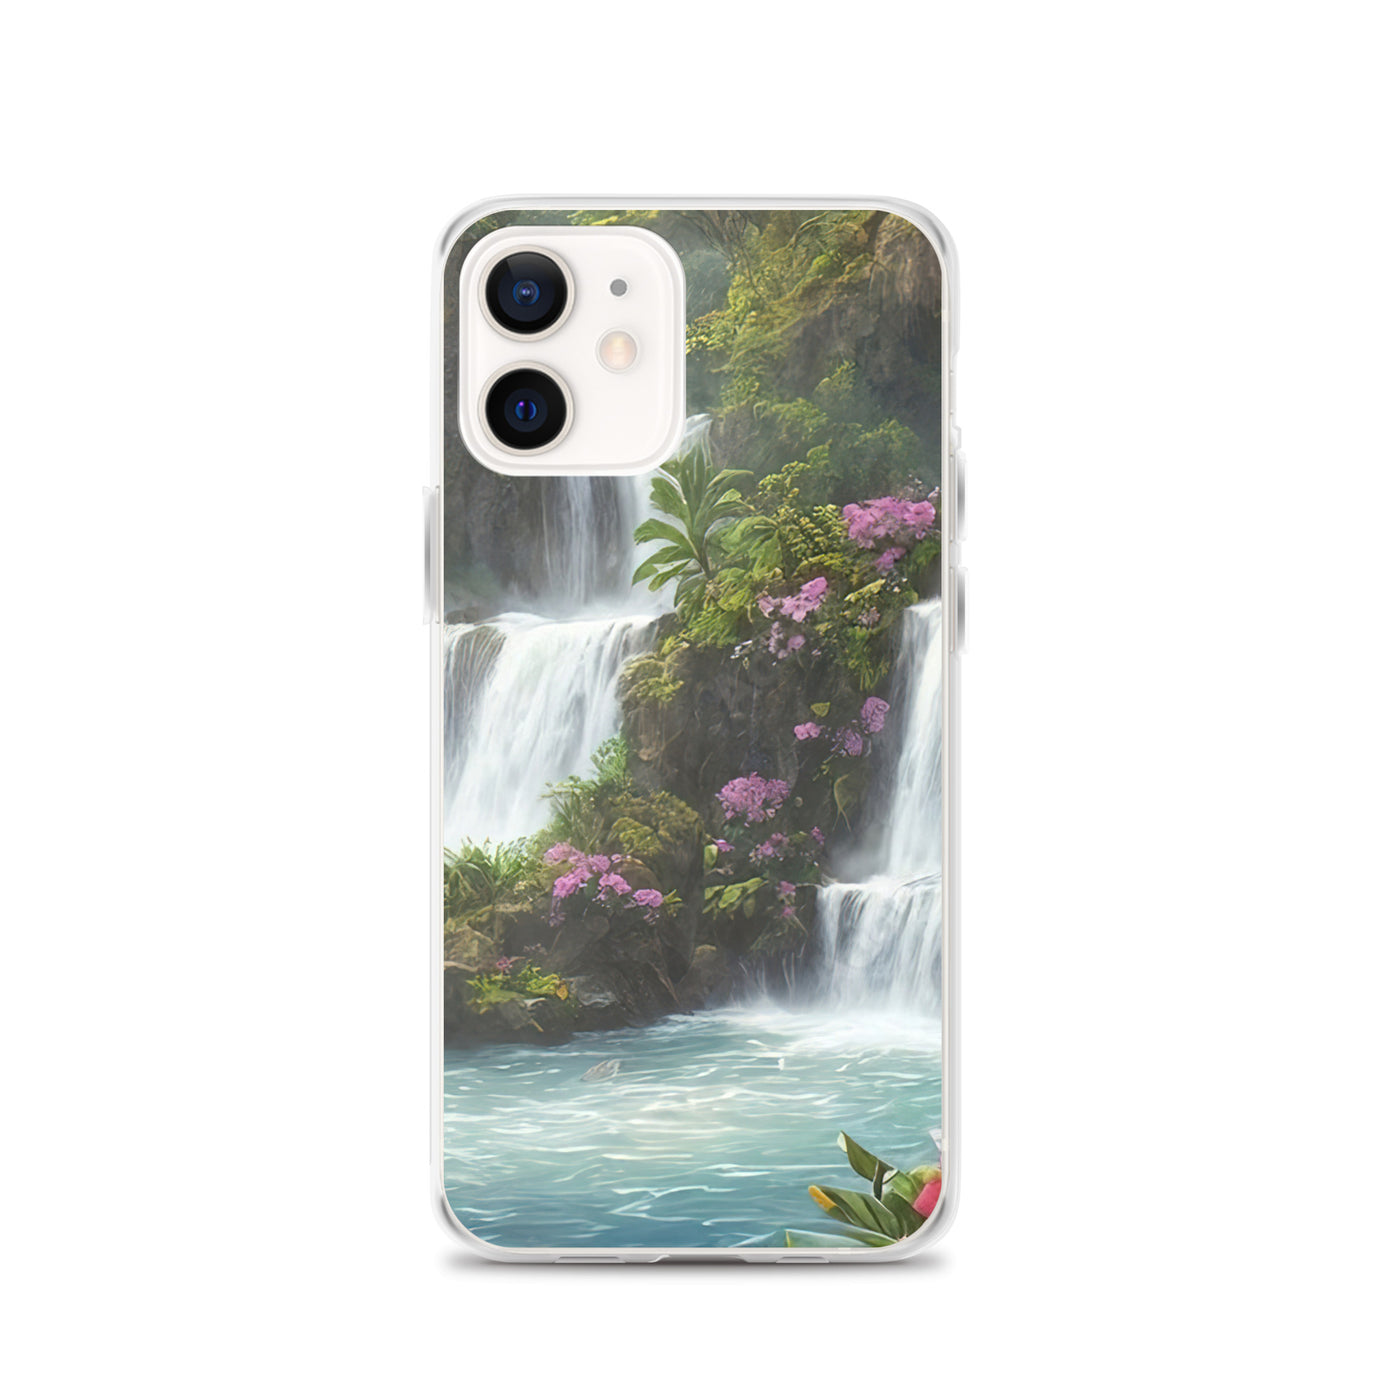 Wasserfall im Wald und Blumen - Schöne Malerei - iPhone Schutzhülle (durchsichtig) camping xxx iPhone 12